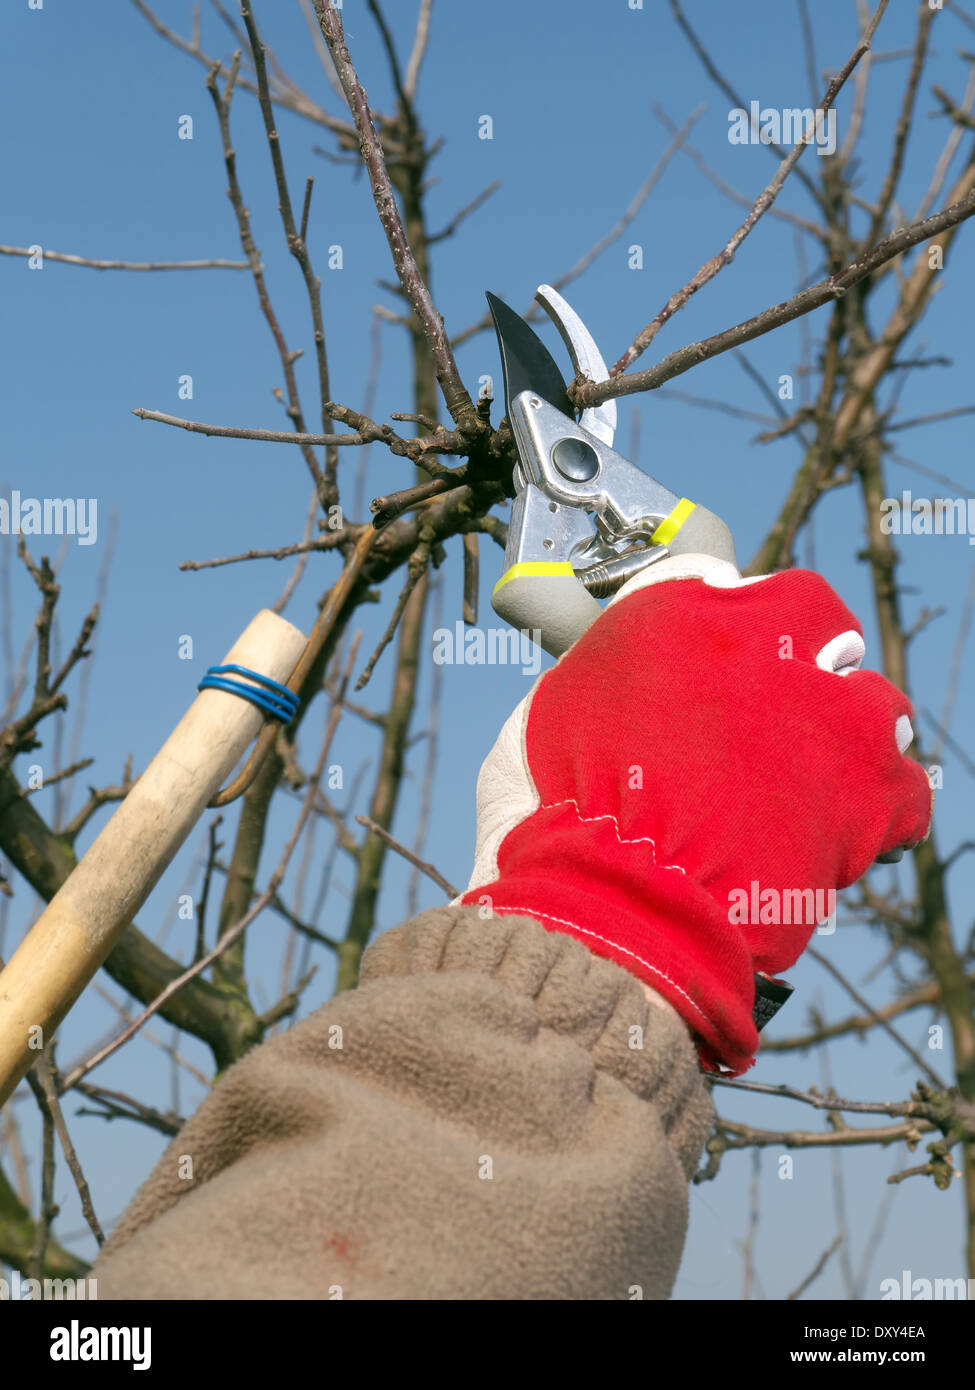 Jardinero poda de ramas de árboles de manzana con pruners Foto de stock